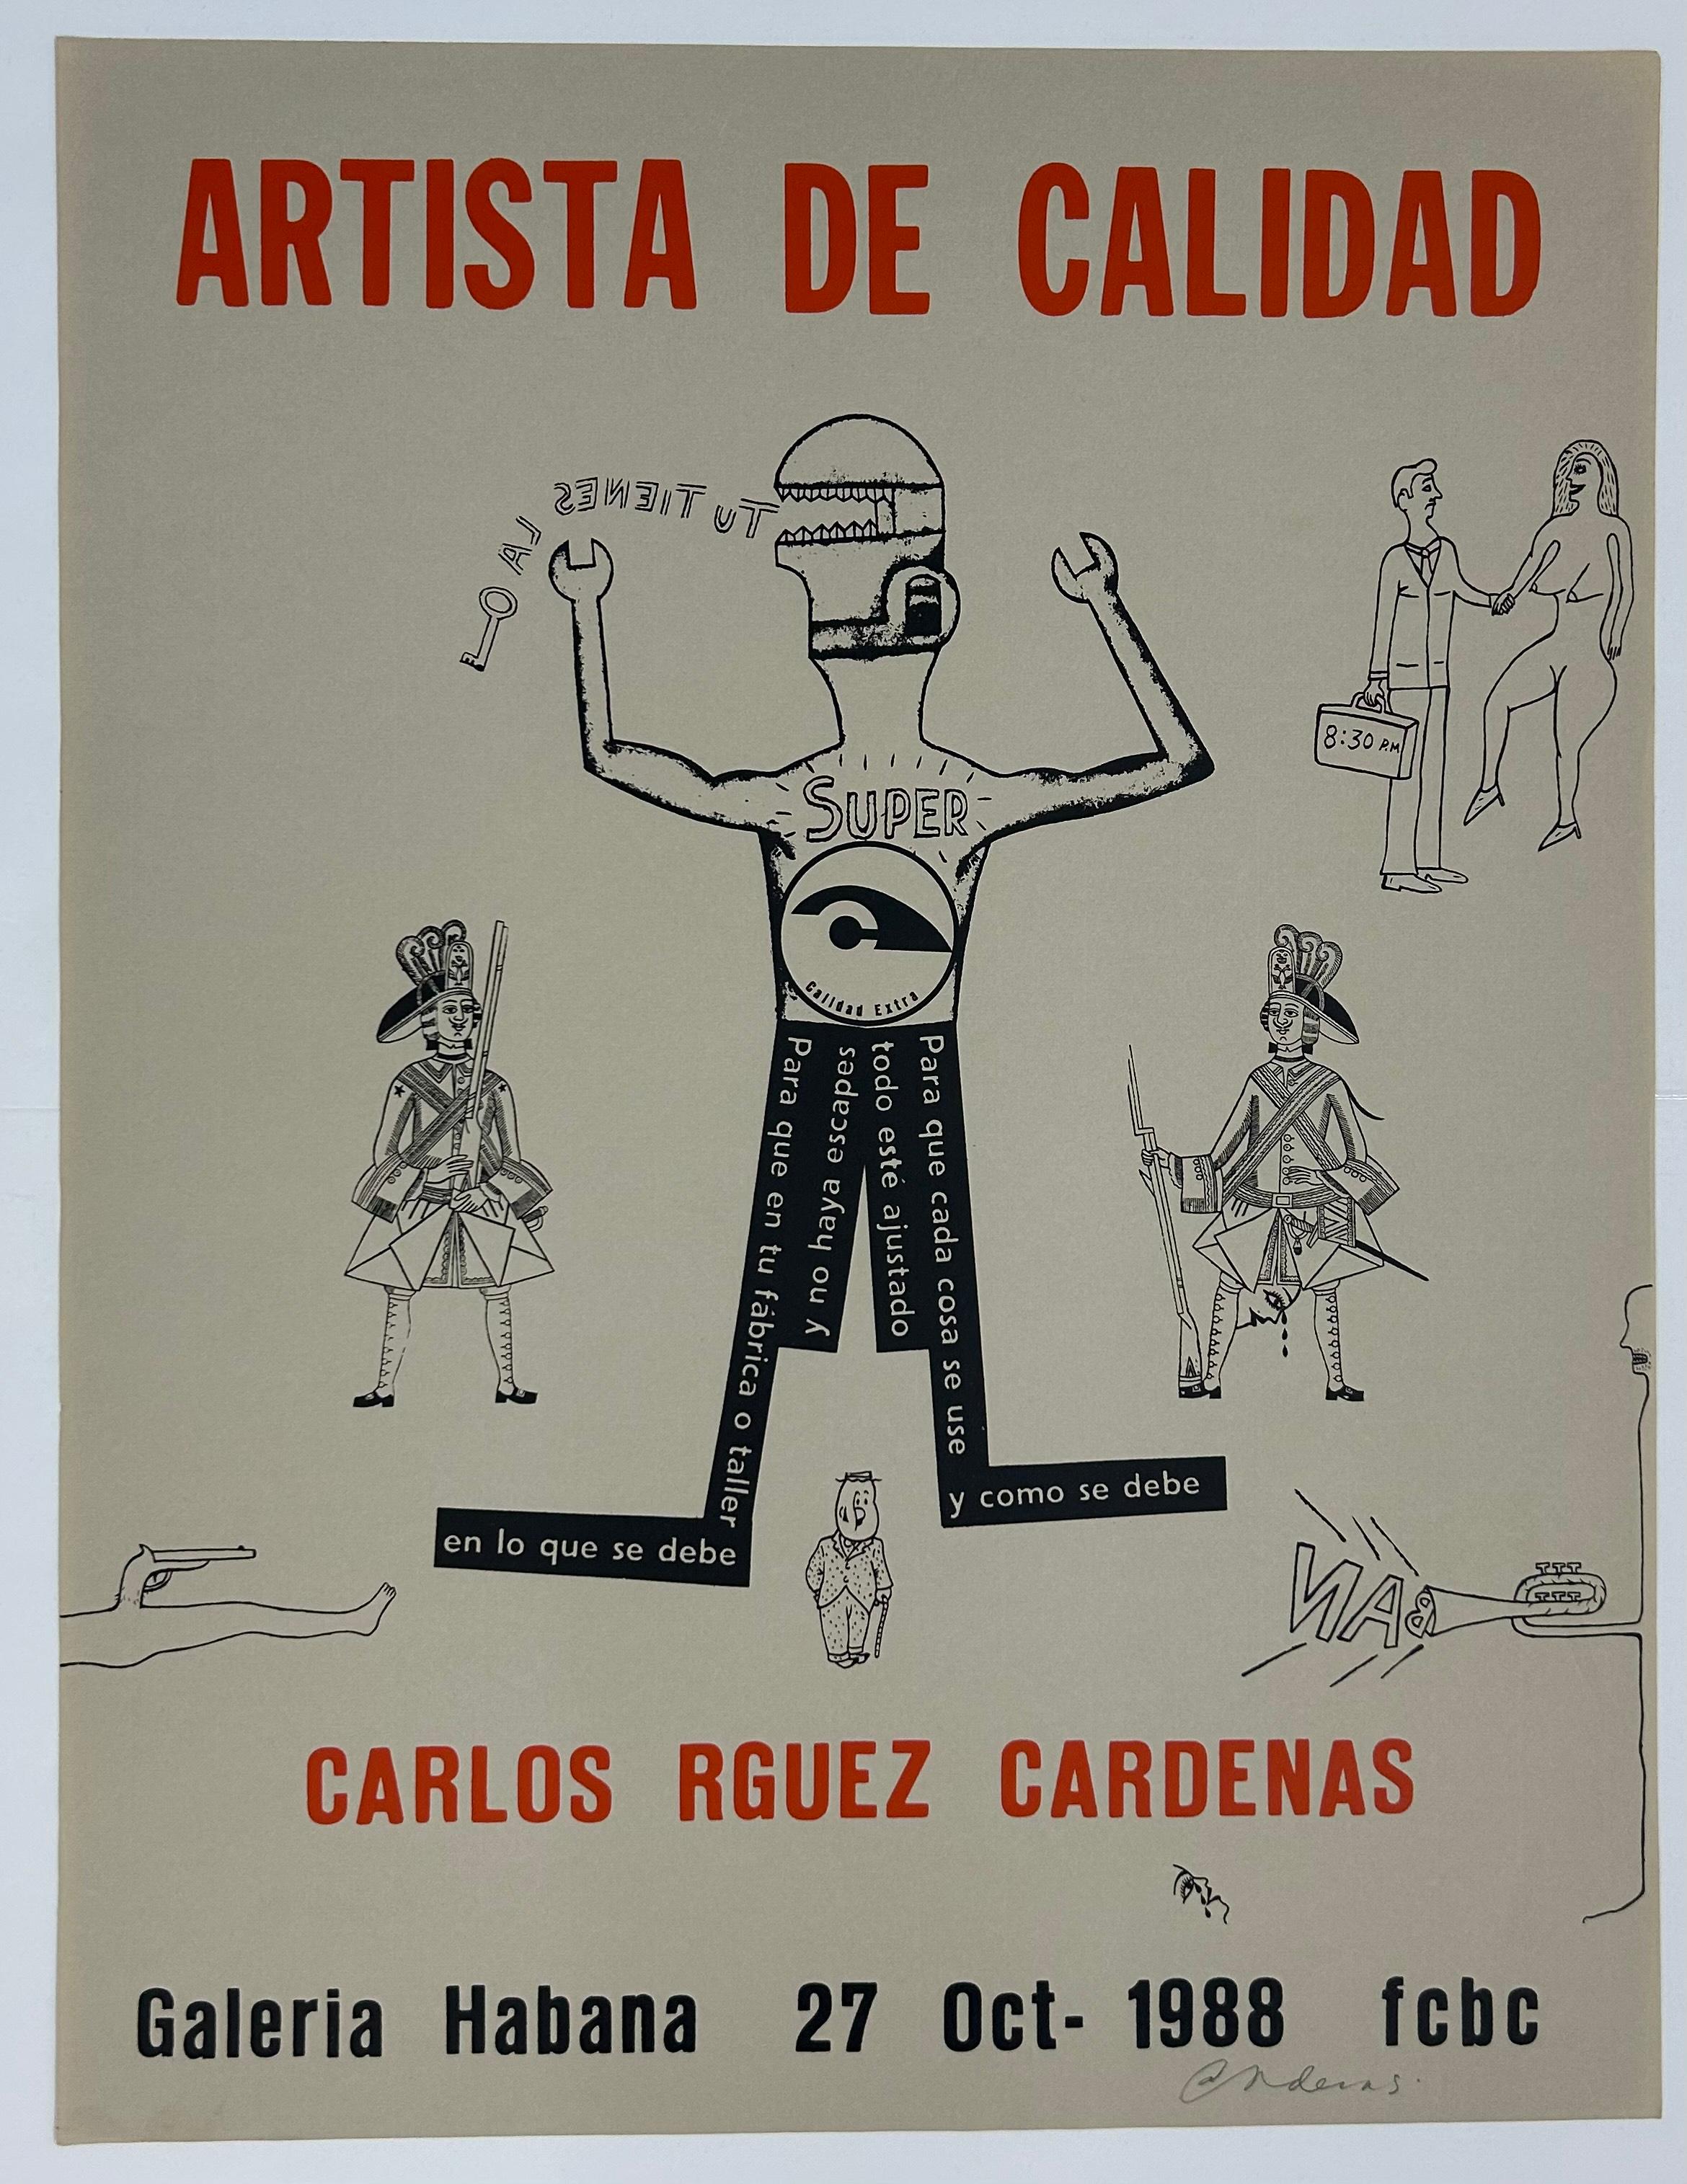 Carlos Rodriguez Cardenas (Kuba, 1962)
Künstler der Güte", 1988
Siebdruck auf Papier
25,6 x 19,7 Zoll (65 x 49,8 cm.)
Ungerahmt
ID: ROD-201
Vom Autor handsigniert